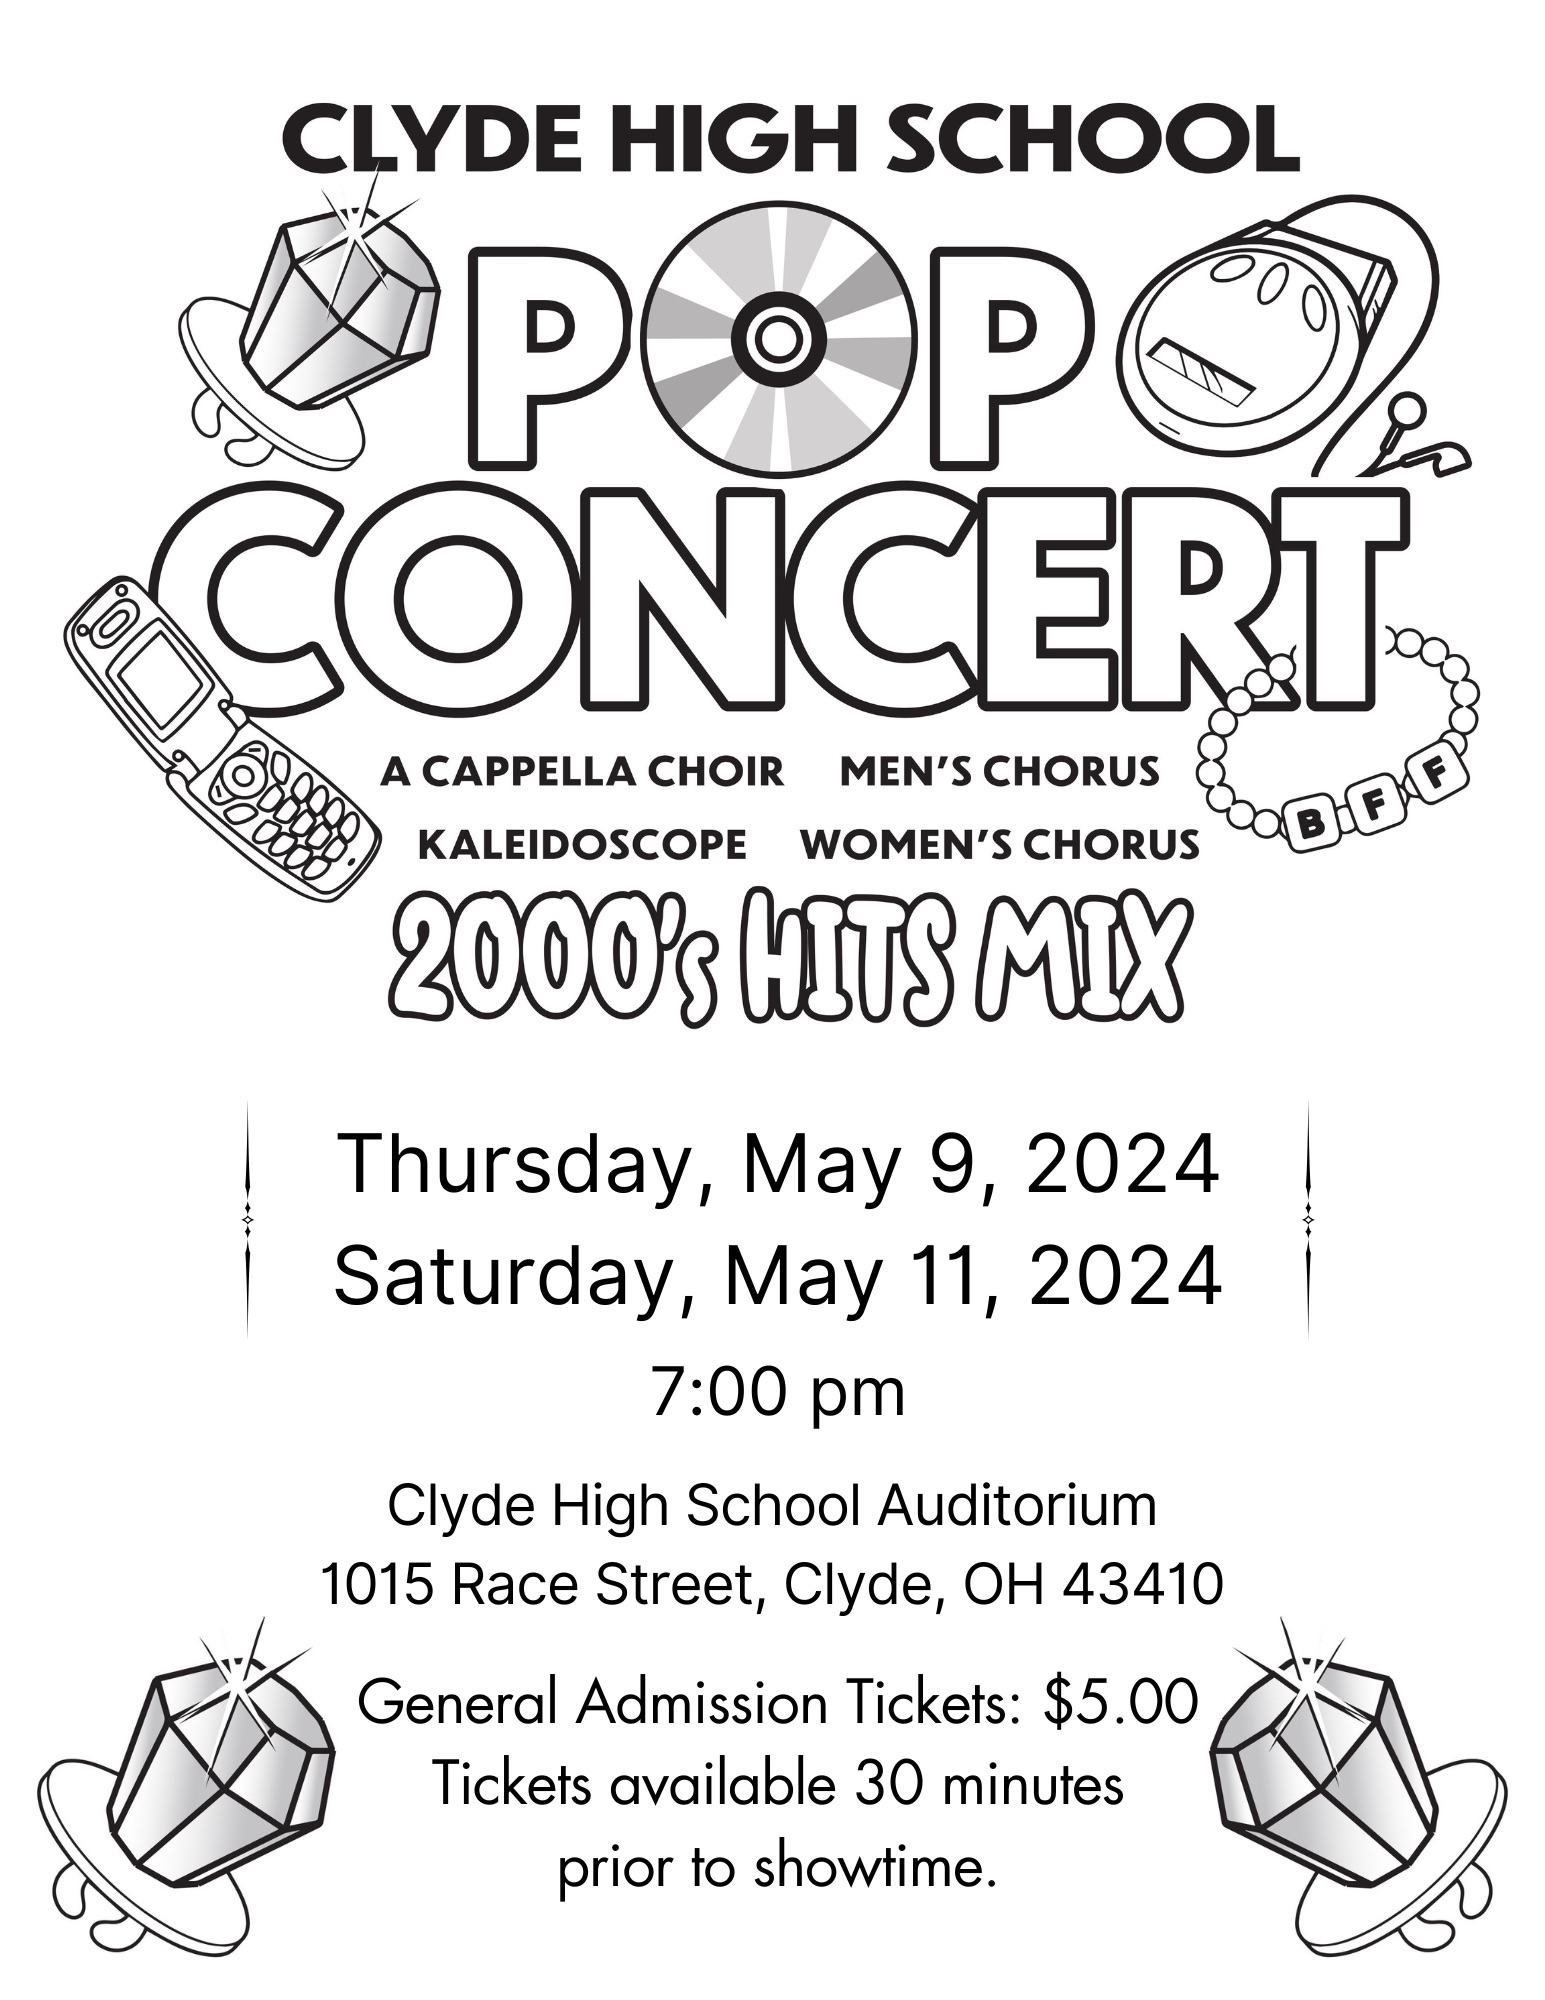 Clyde High School Pop Concert